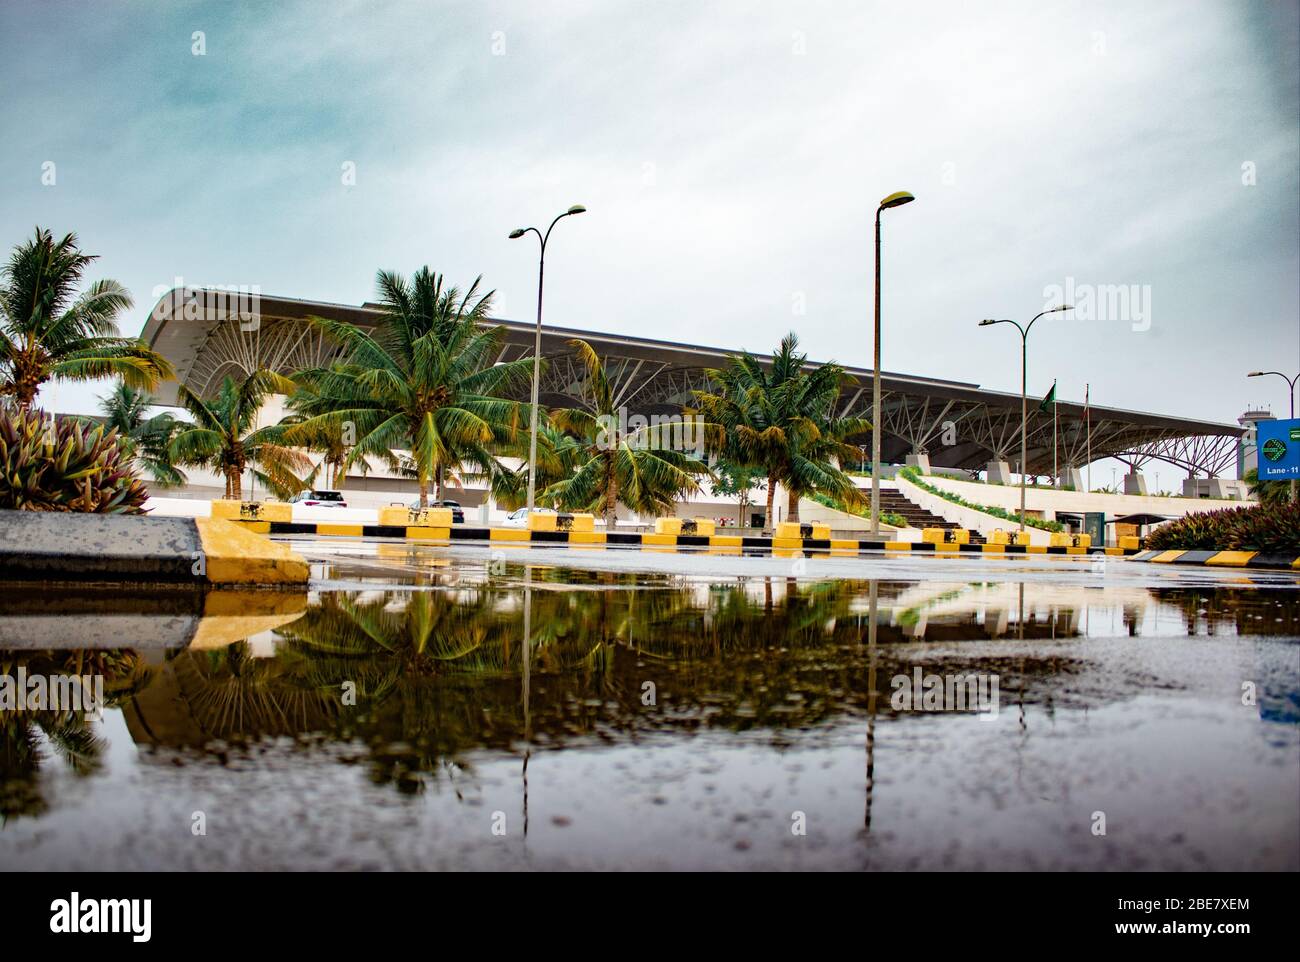 Jour de pluie à l'aéroport international de Salalah juste avant une tempête, Sultanat d'Oman . c'est un aéroport international de passagers. Banque D'Images